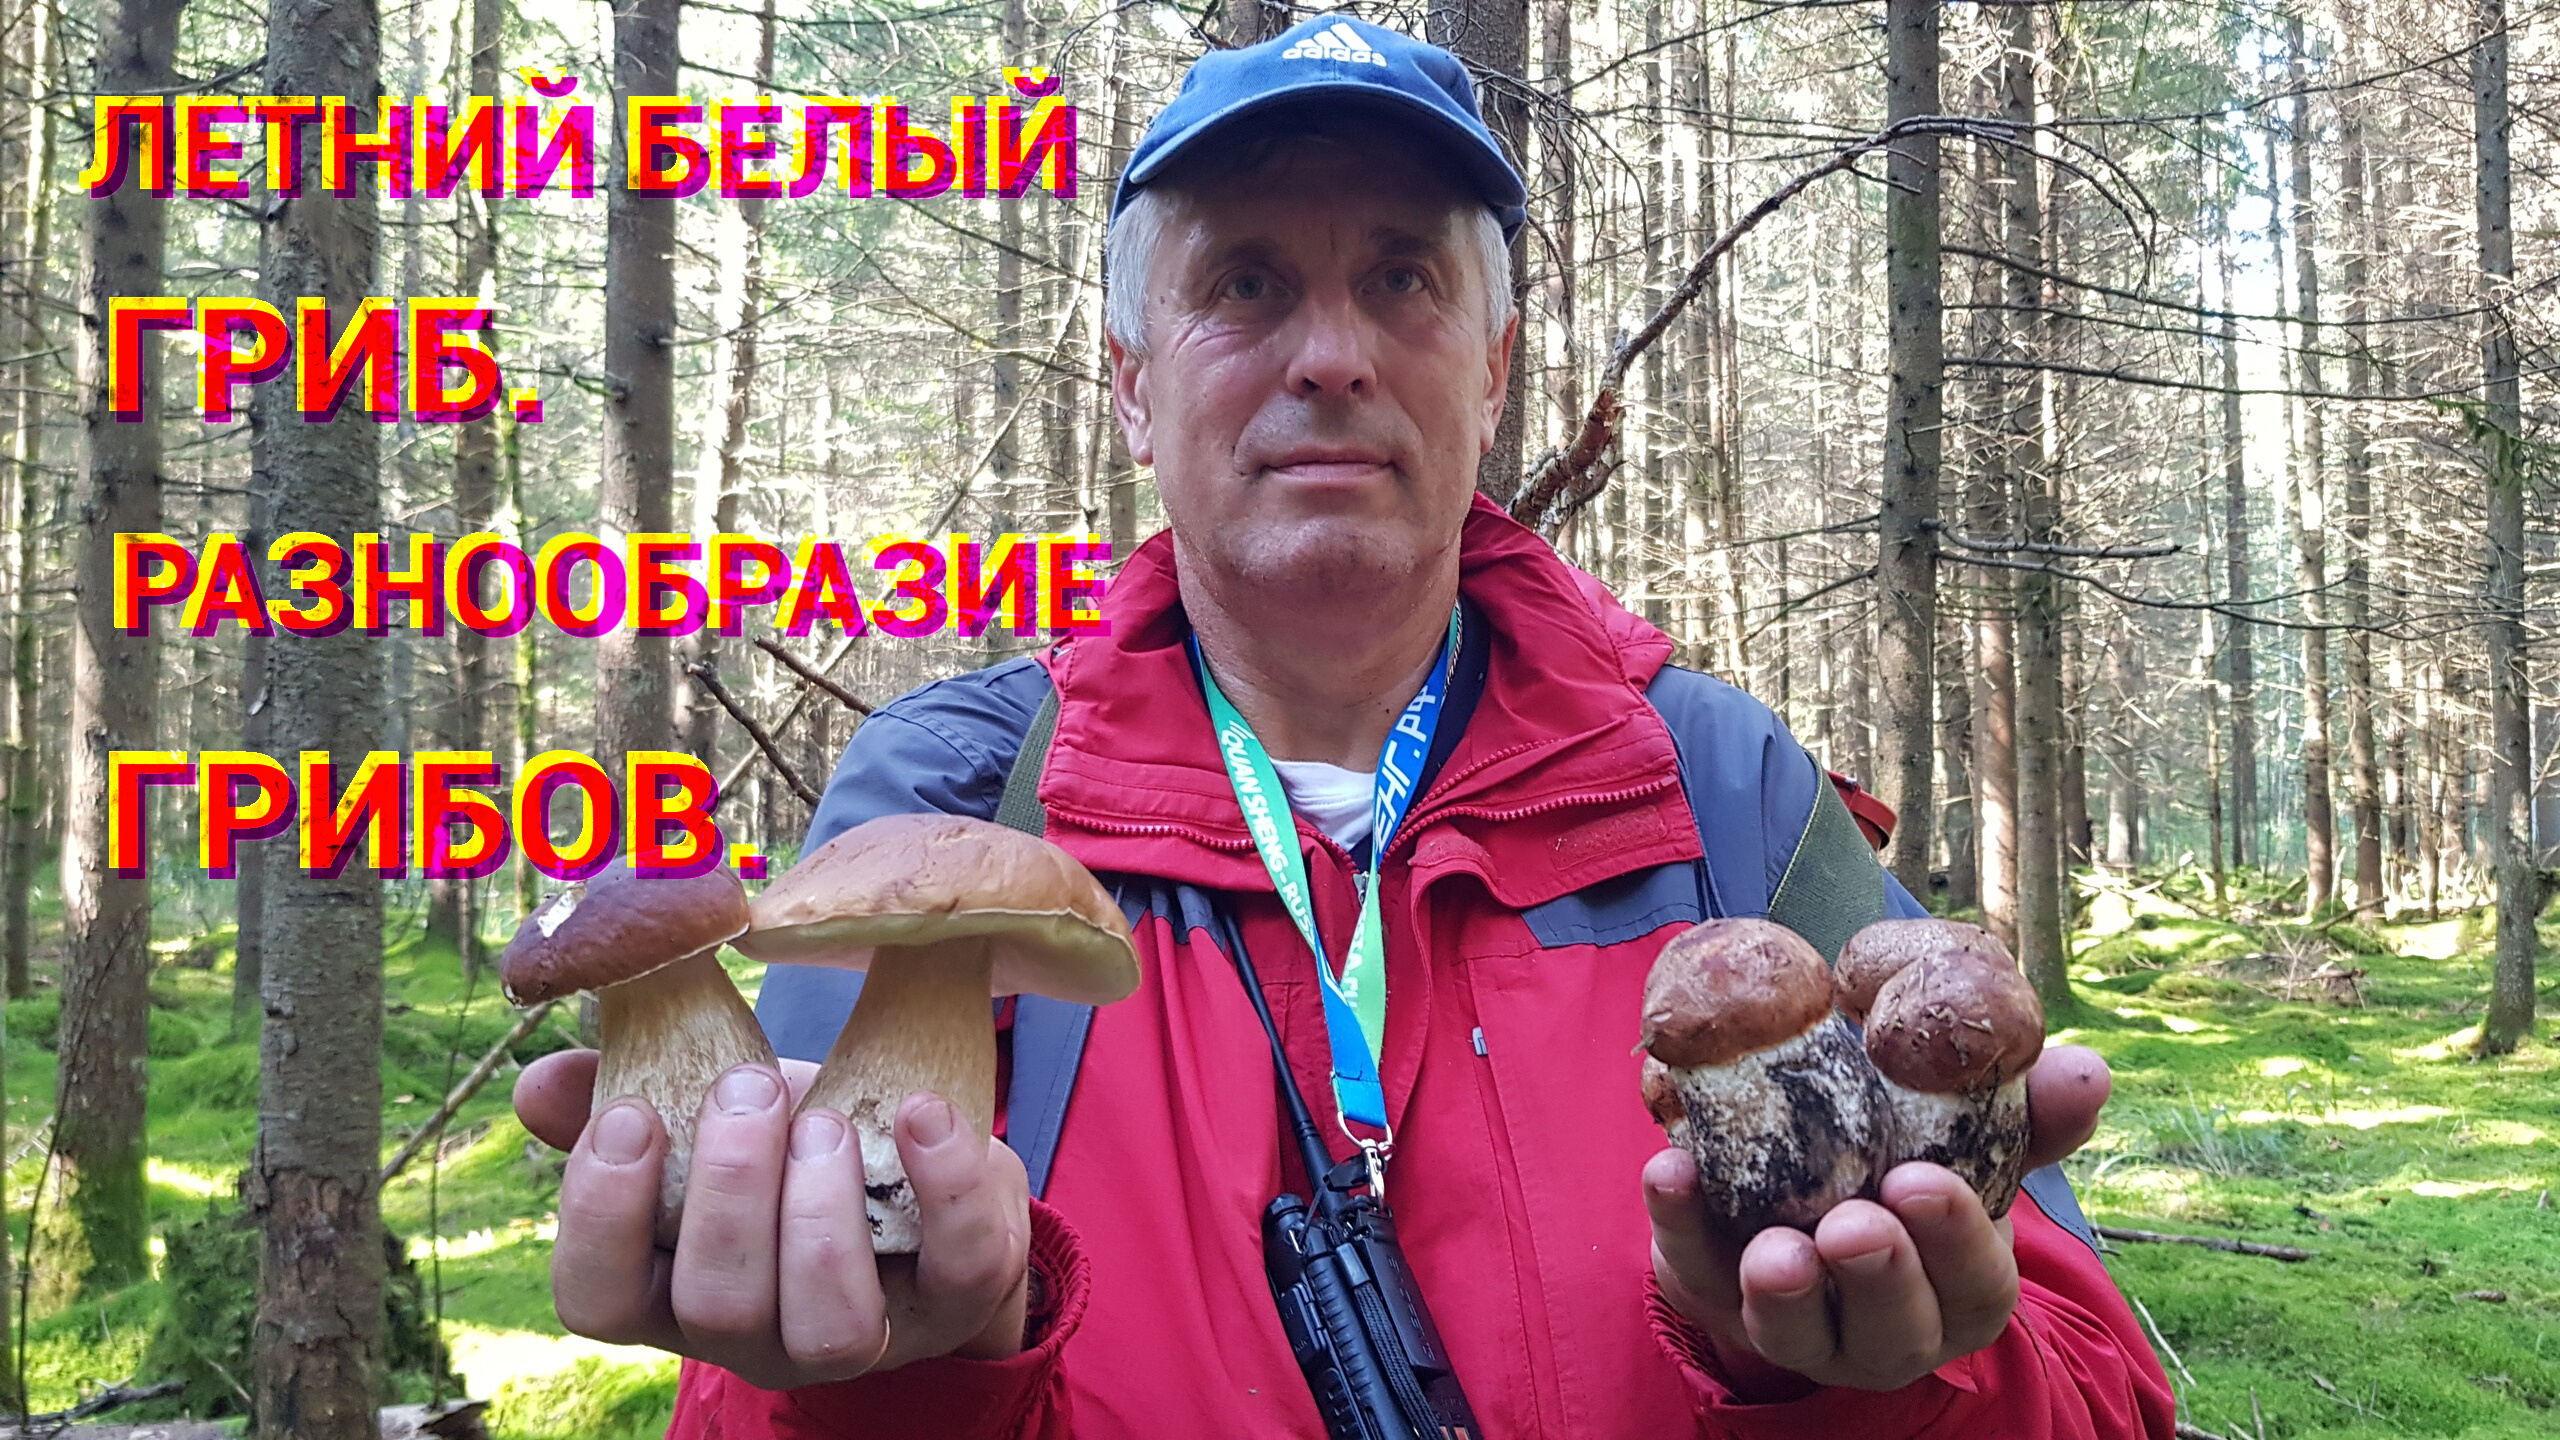 СБОР ГРИБОВ В КОНЦЕ ЛЕТА 2021. Разнообразие грибов. Грибная банда, поехать за грибами.mp4